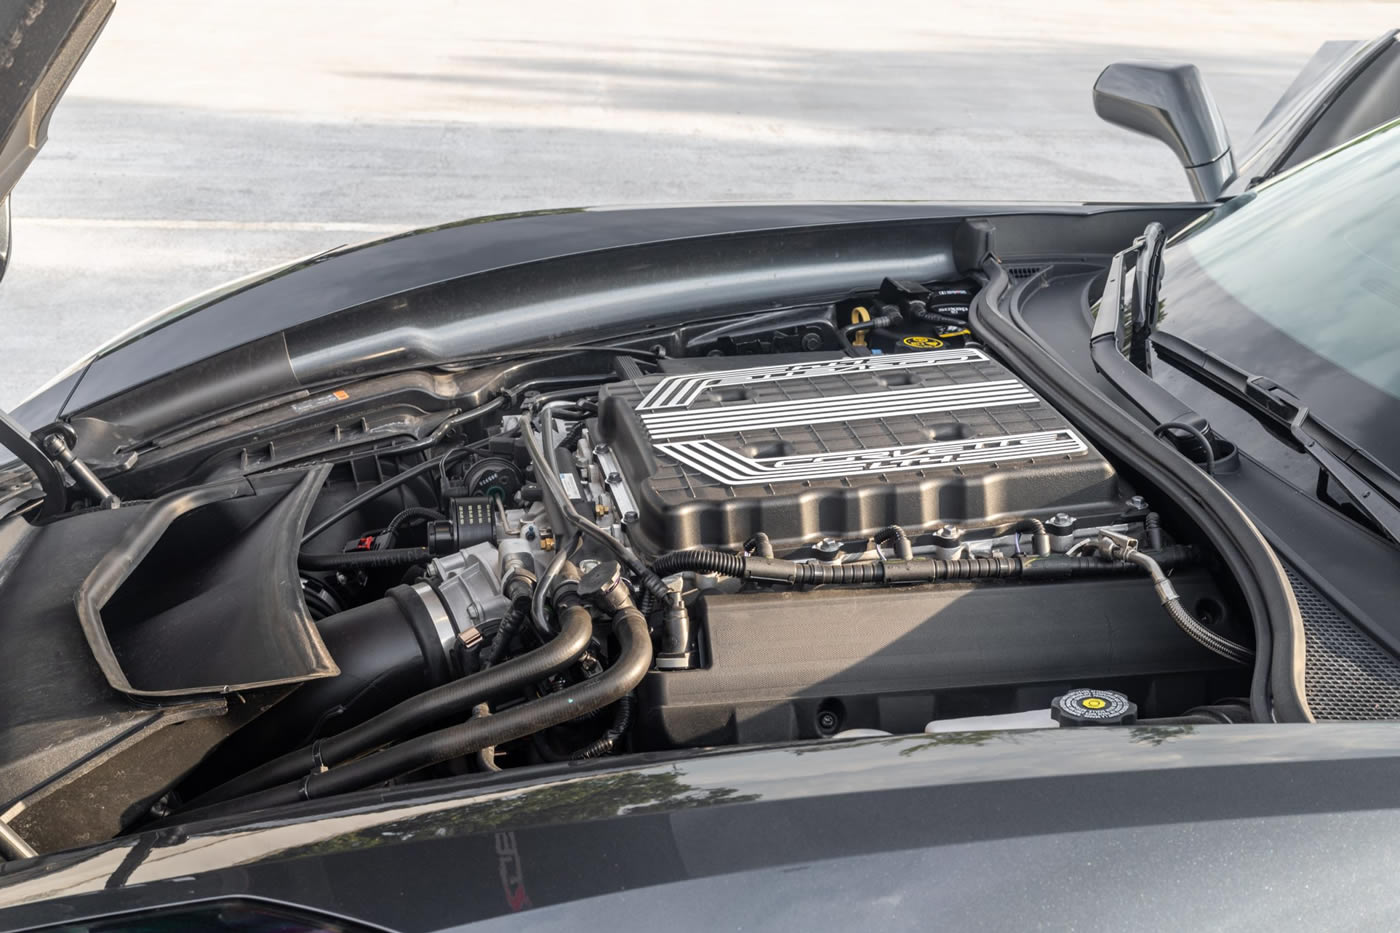 2018 Corvette Z06 Coupe 2LZ 7-Speed in Watkins Glen Gray